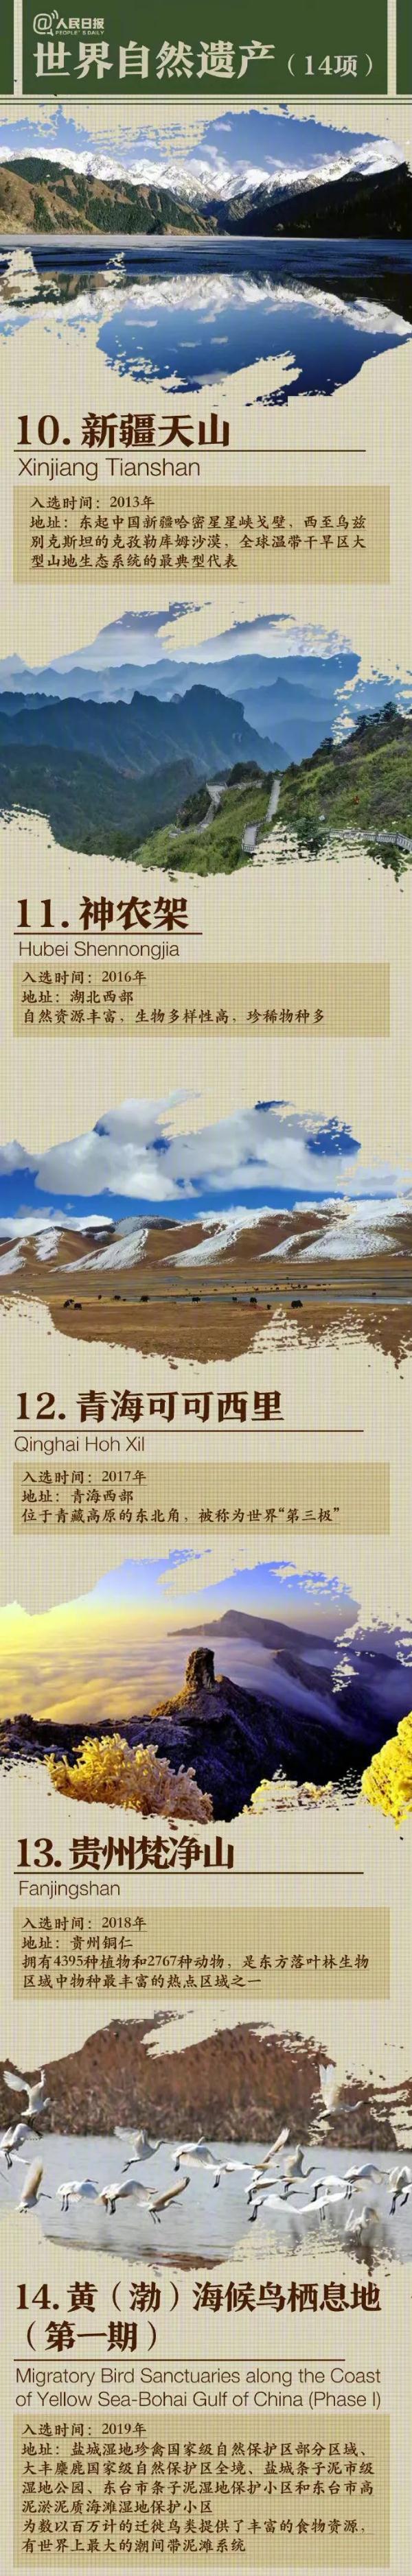 世界文化遗产有哪些 中国56个世界遗产名录